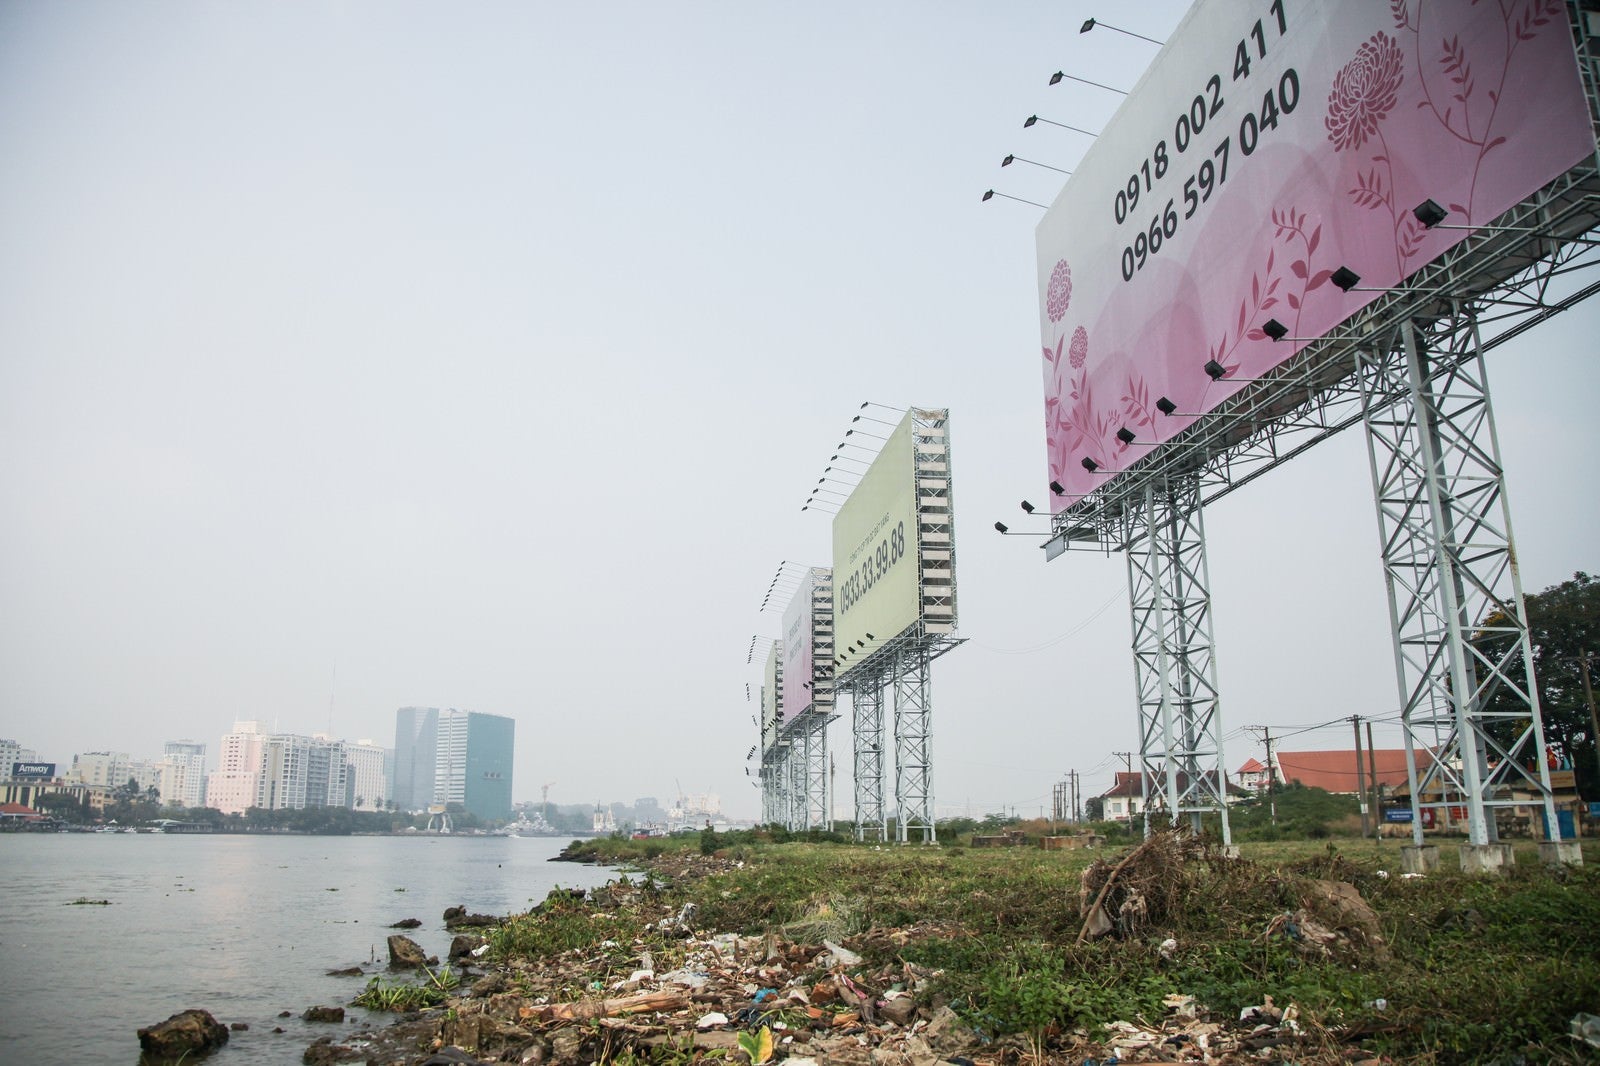 「ホーチミンの沿岸のゴミと広告看板」の写真